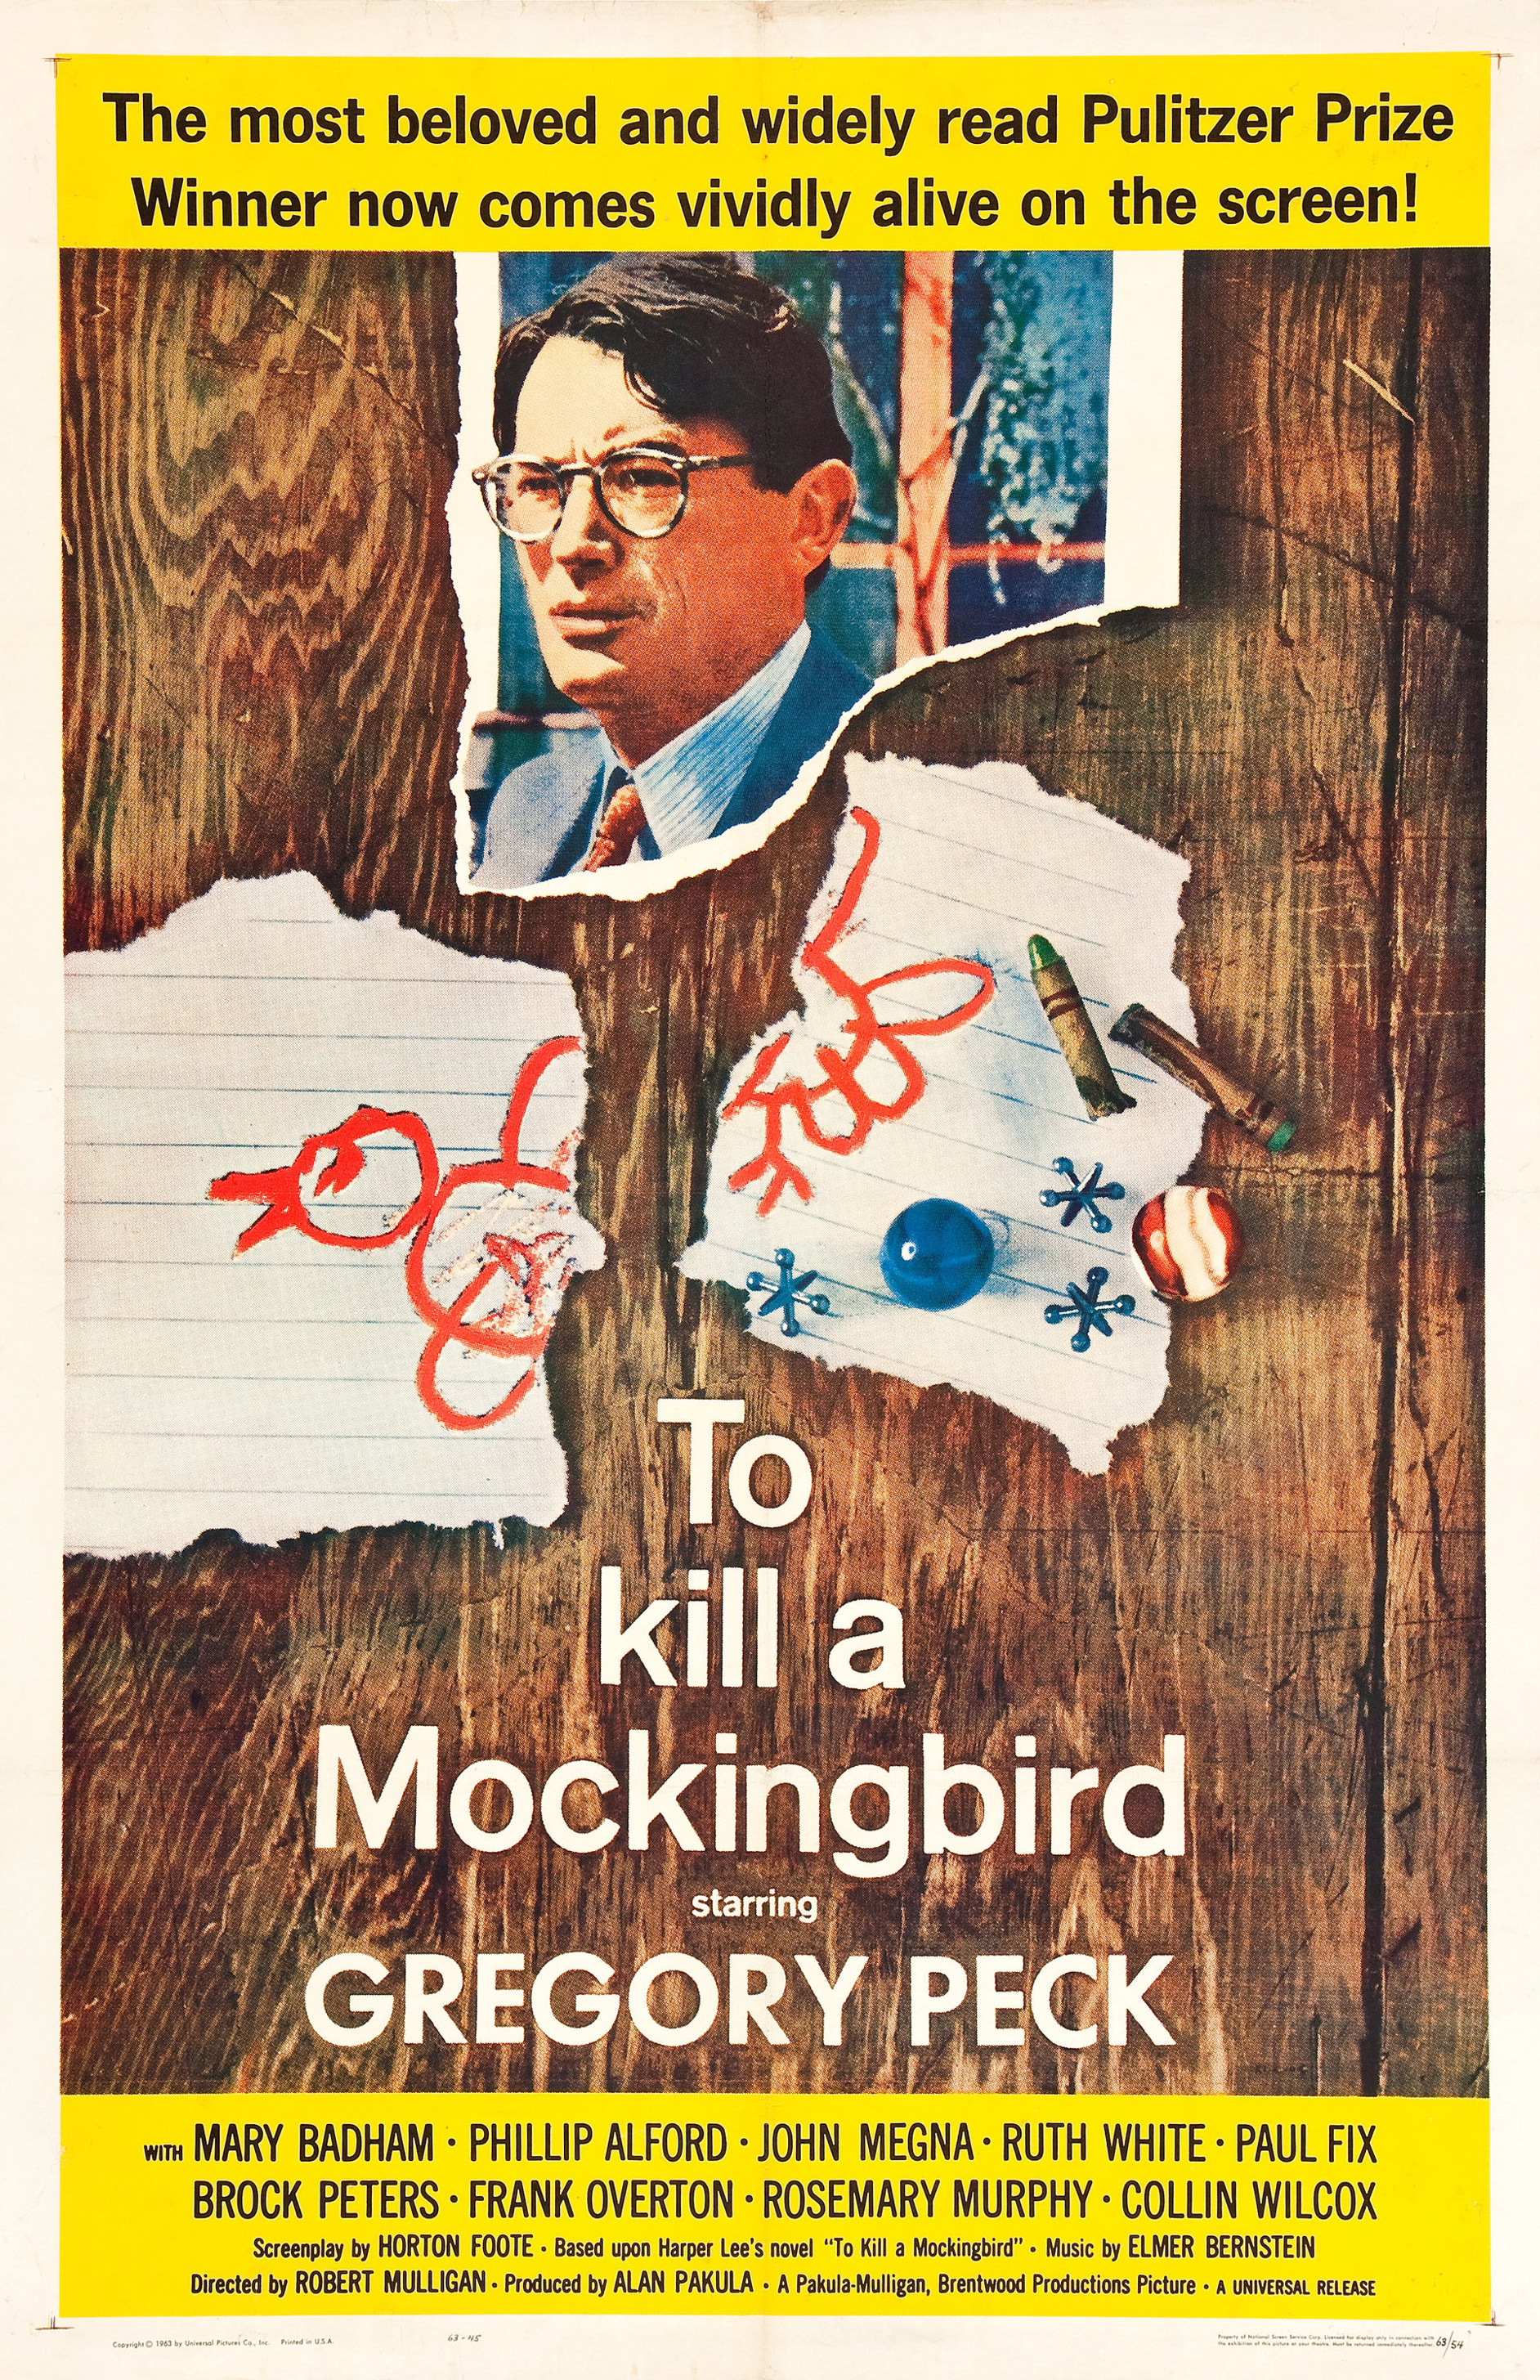 Movie mockingbird Watch Gregory